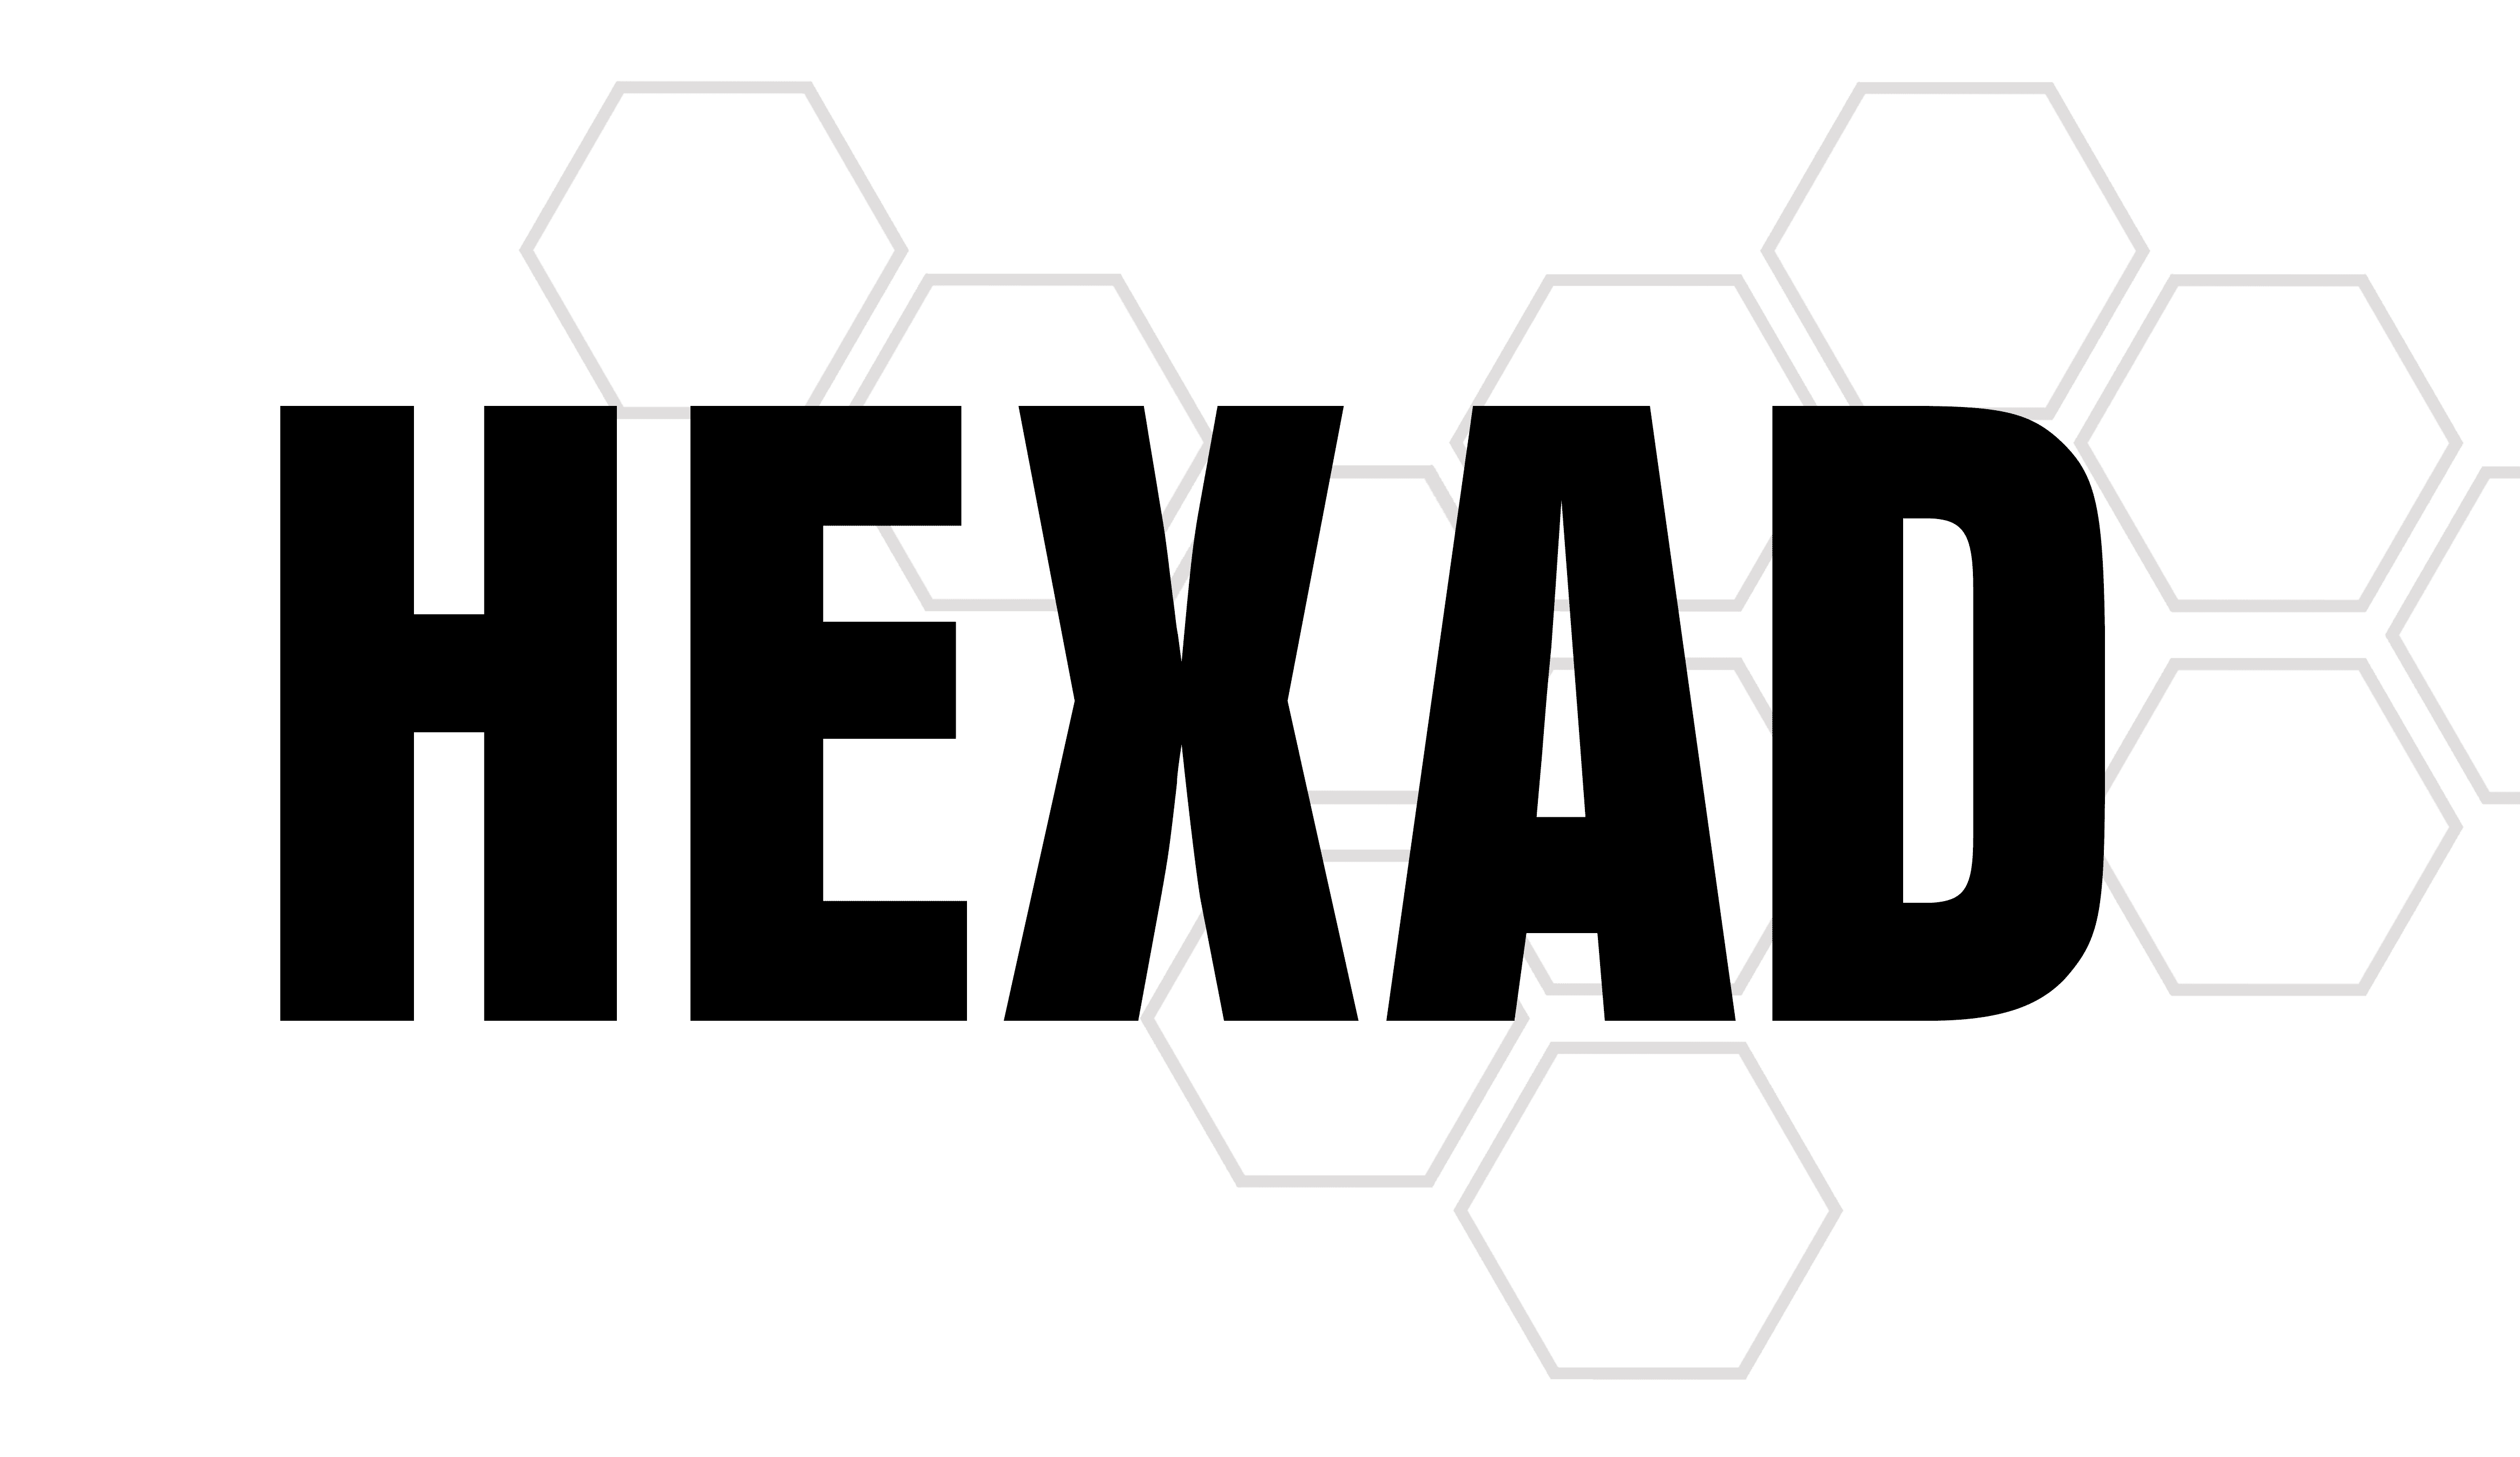 Hexad